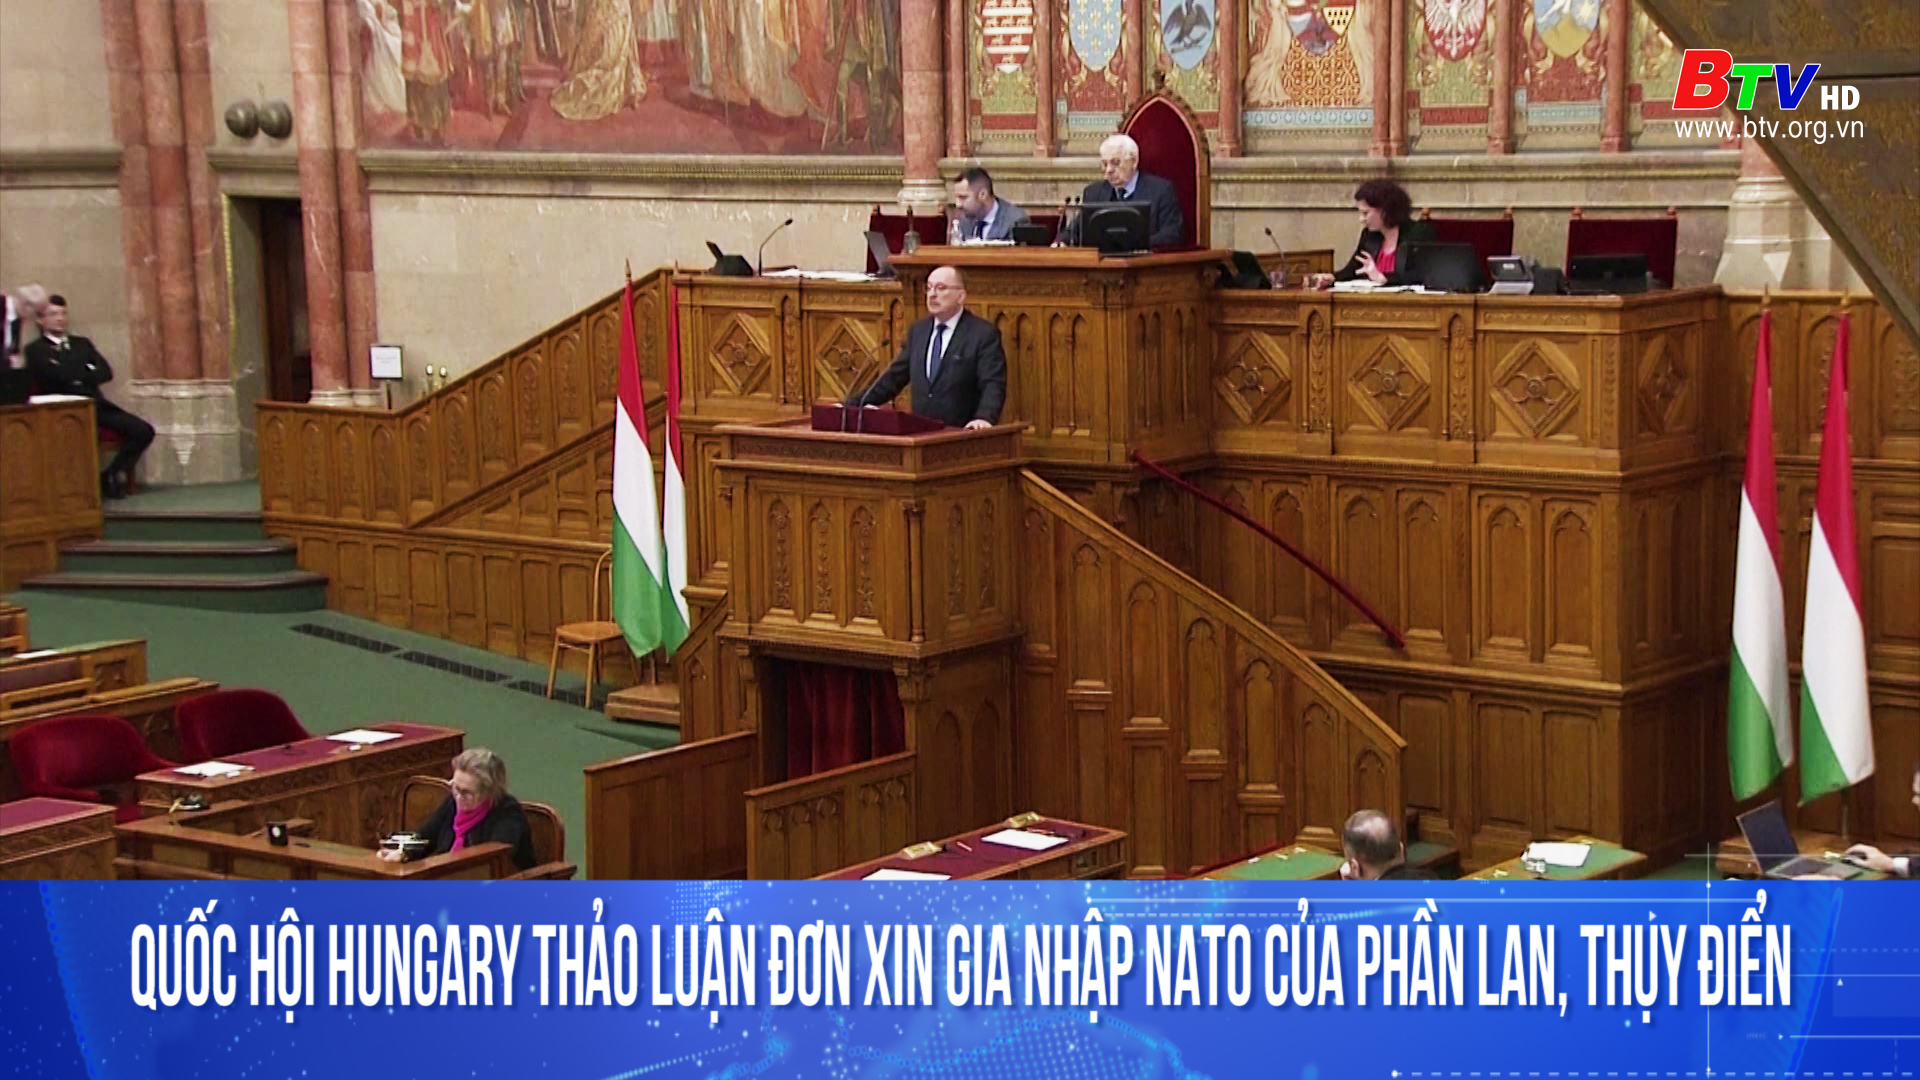 Quốc hội Hungary thảo luận đơn xin gia nhập NATO của Phần Lan, Thụy Điển